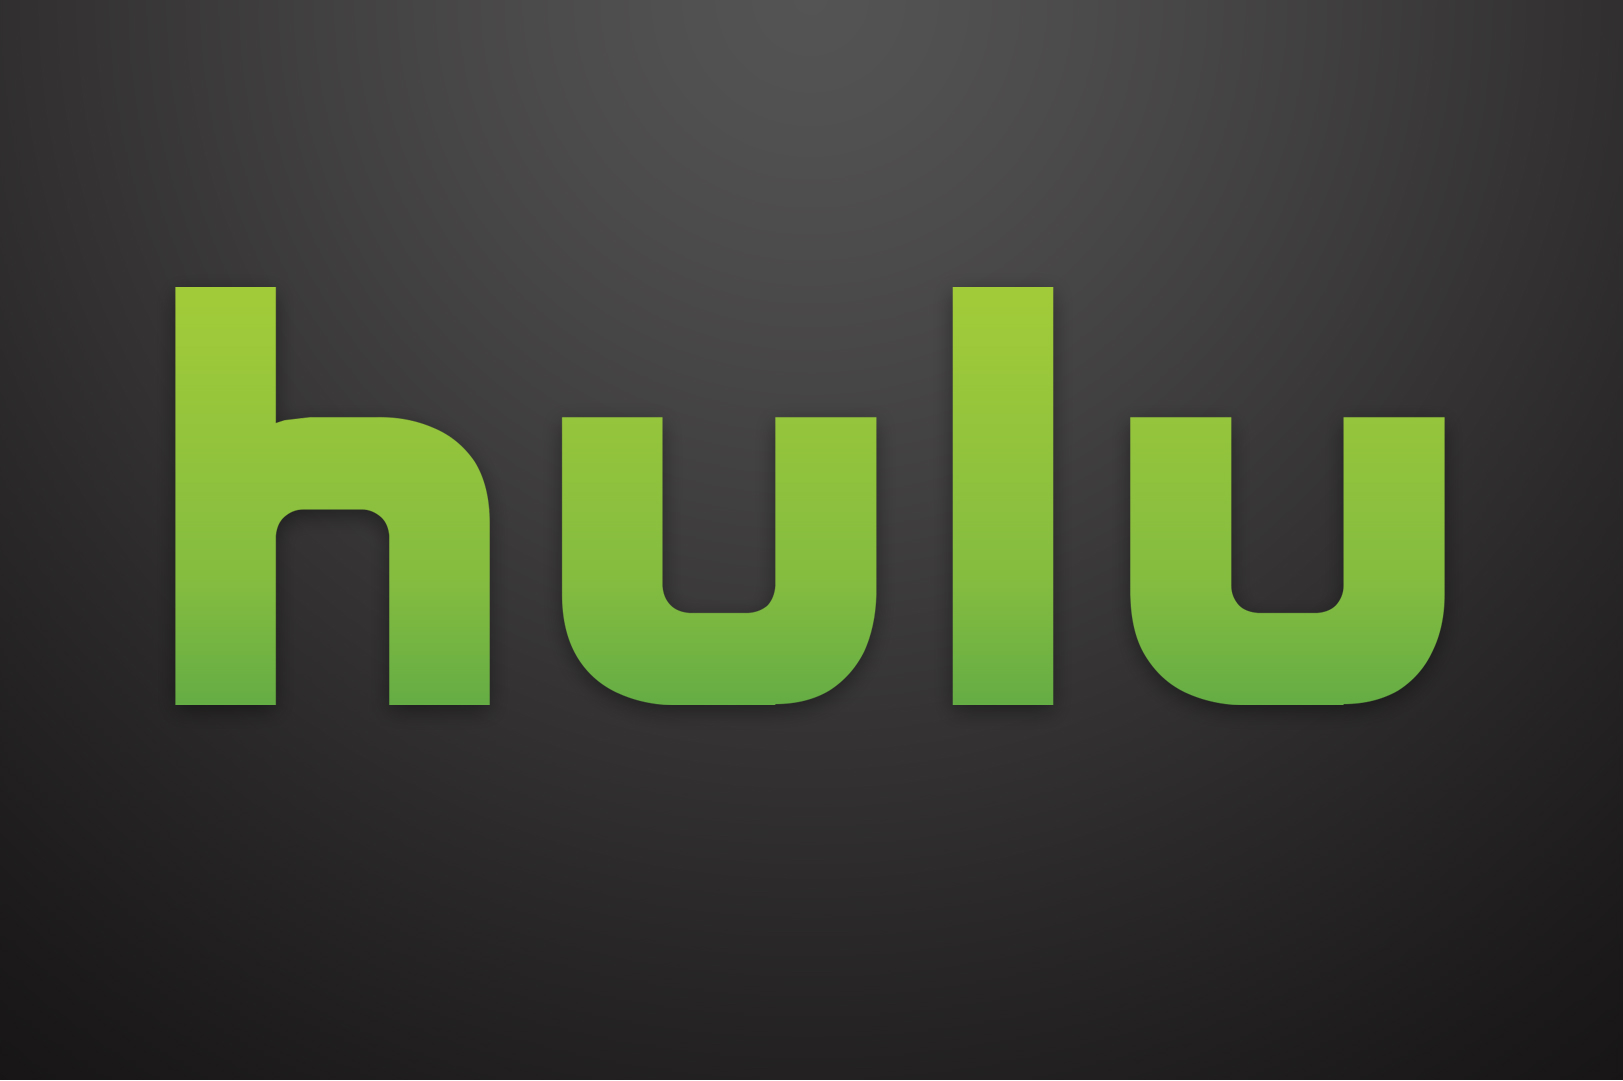 El logotipo de Hulu sobre un fondo gris.